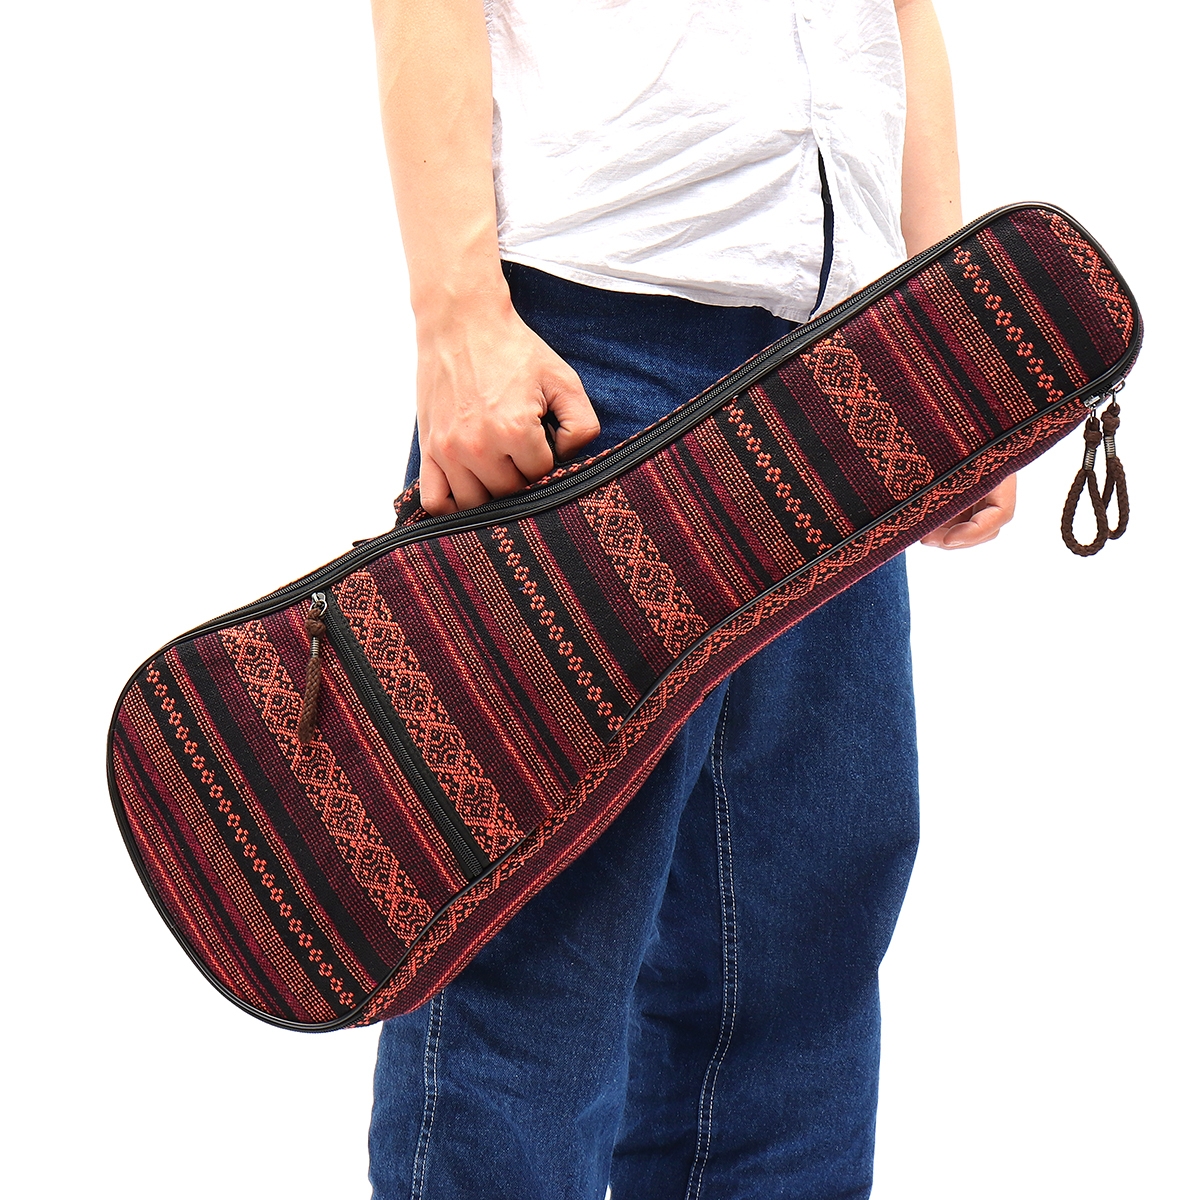 26 Inch Portable Ukulele Bag Instrument Padded Gig Bag Concert Carry Case Cover